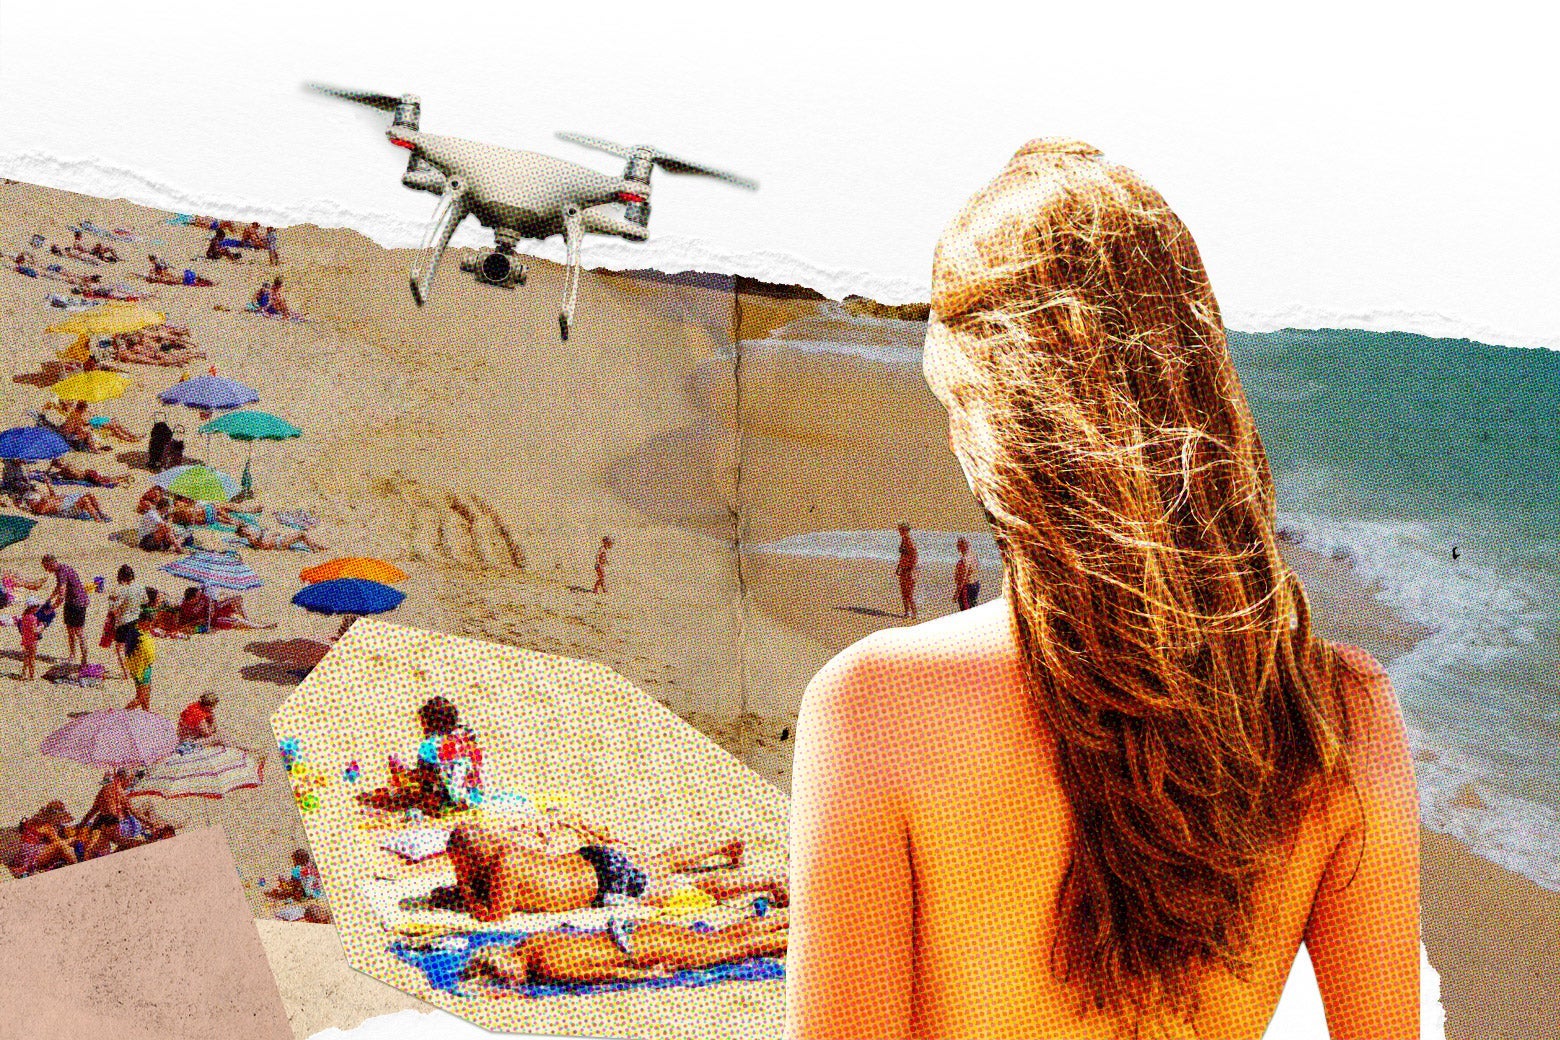 Drone footage nude beach fan image.